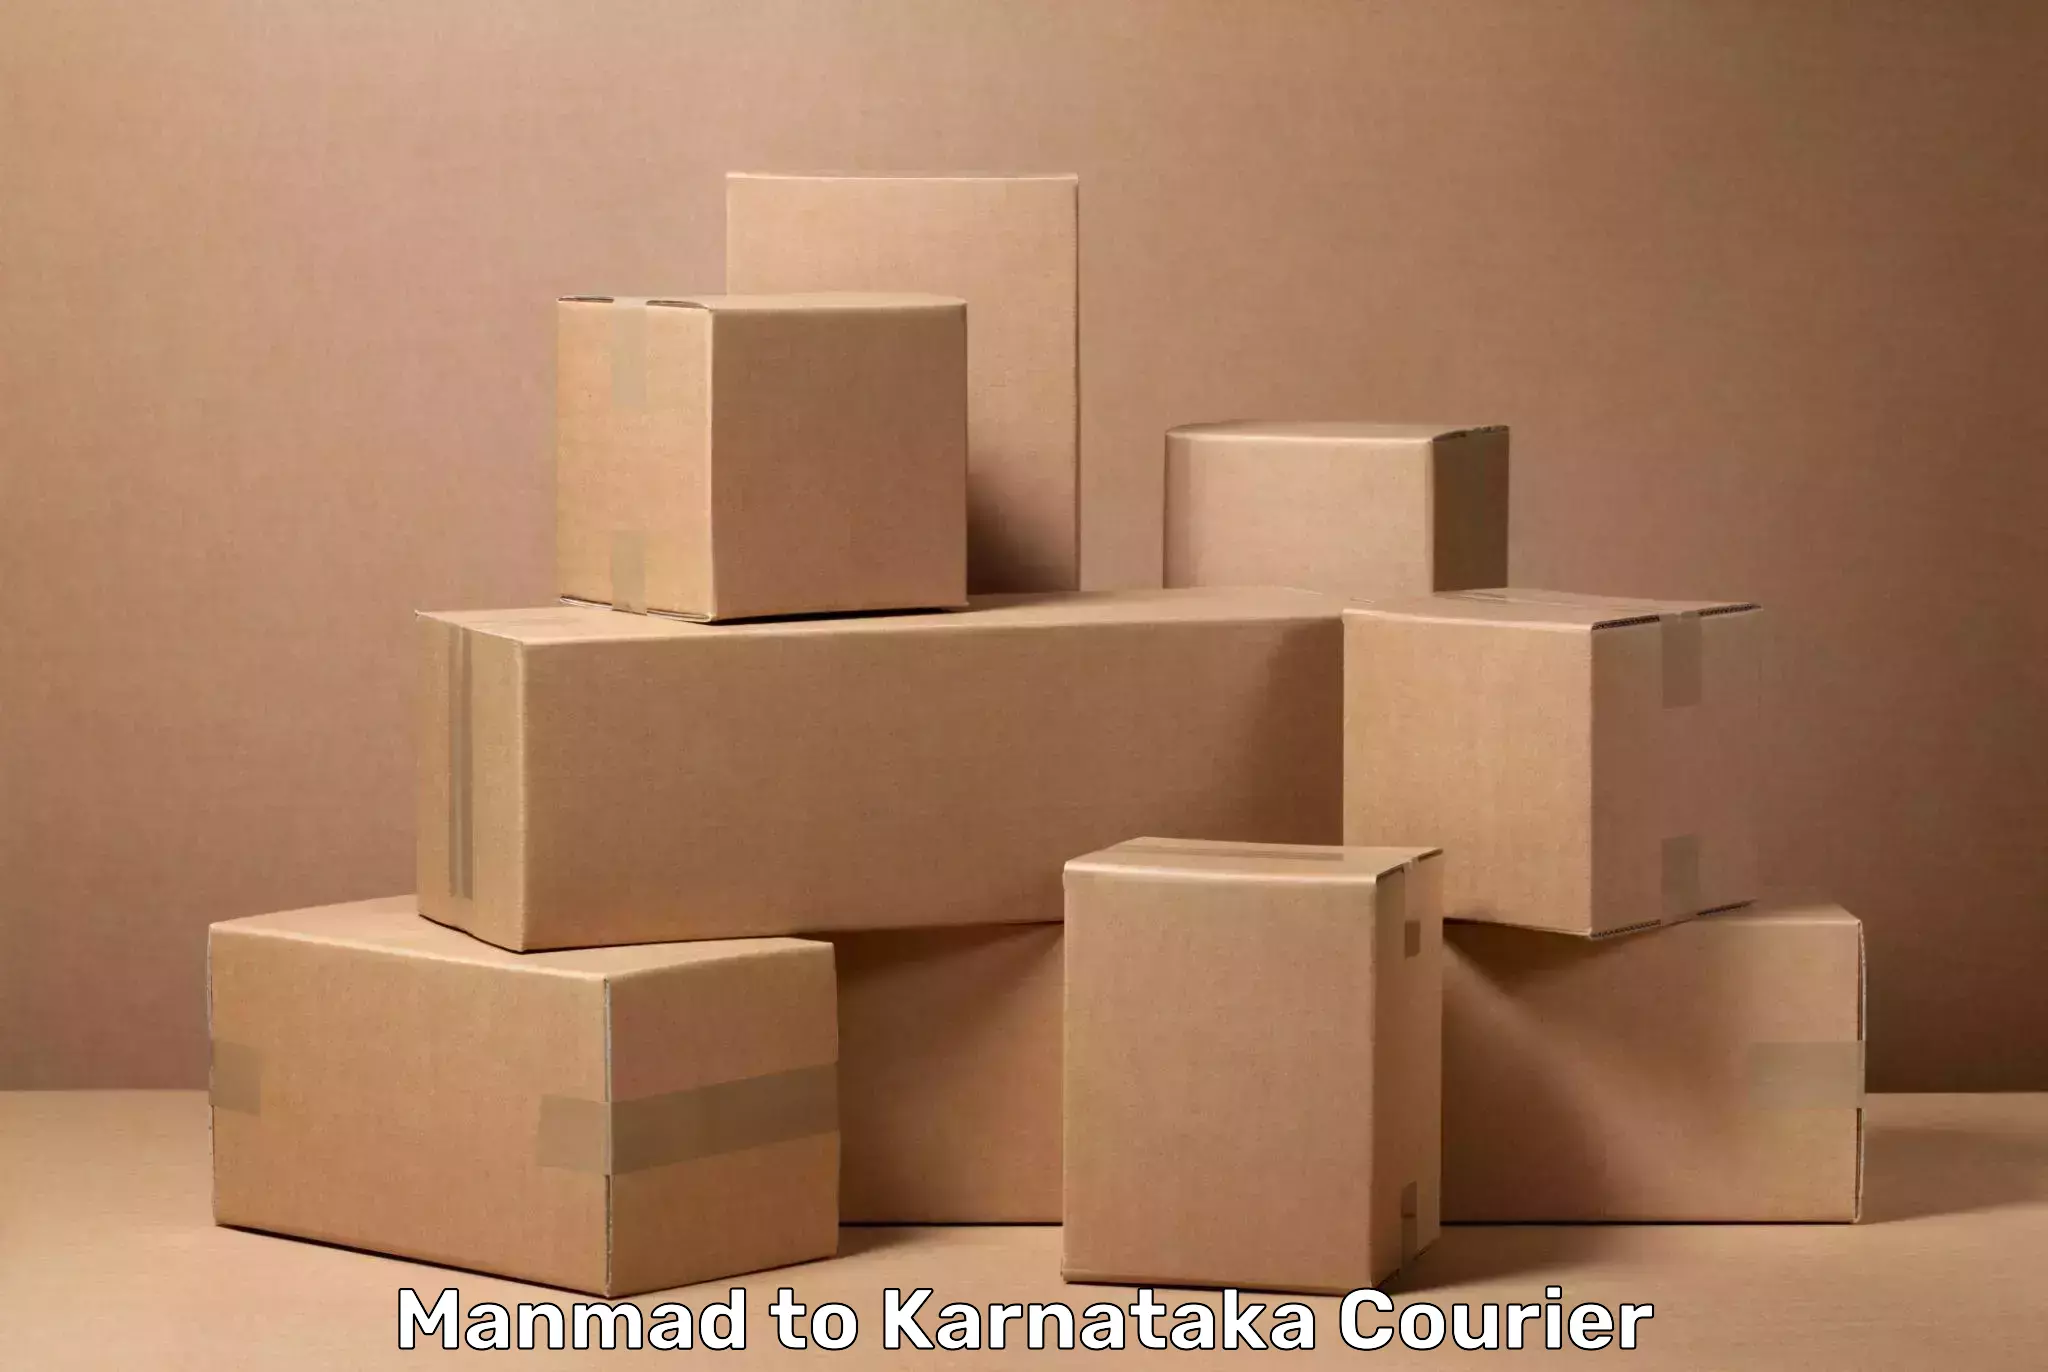 Luggage transport deals Manmad to Karnataka